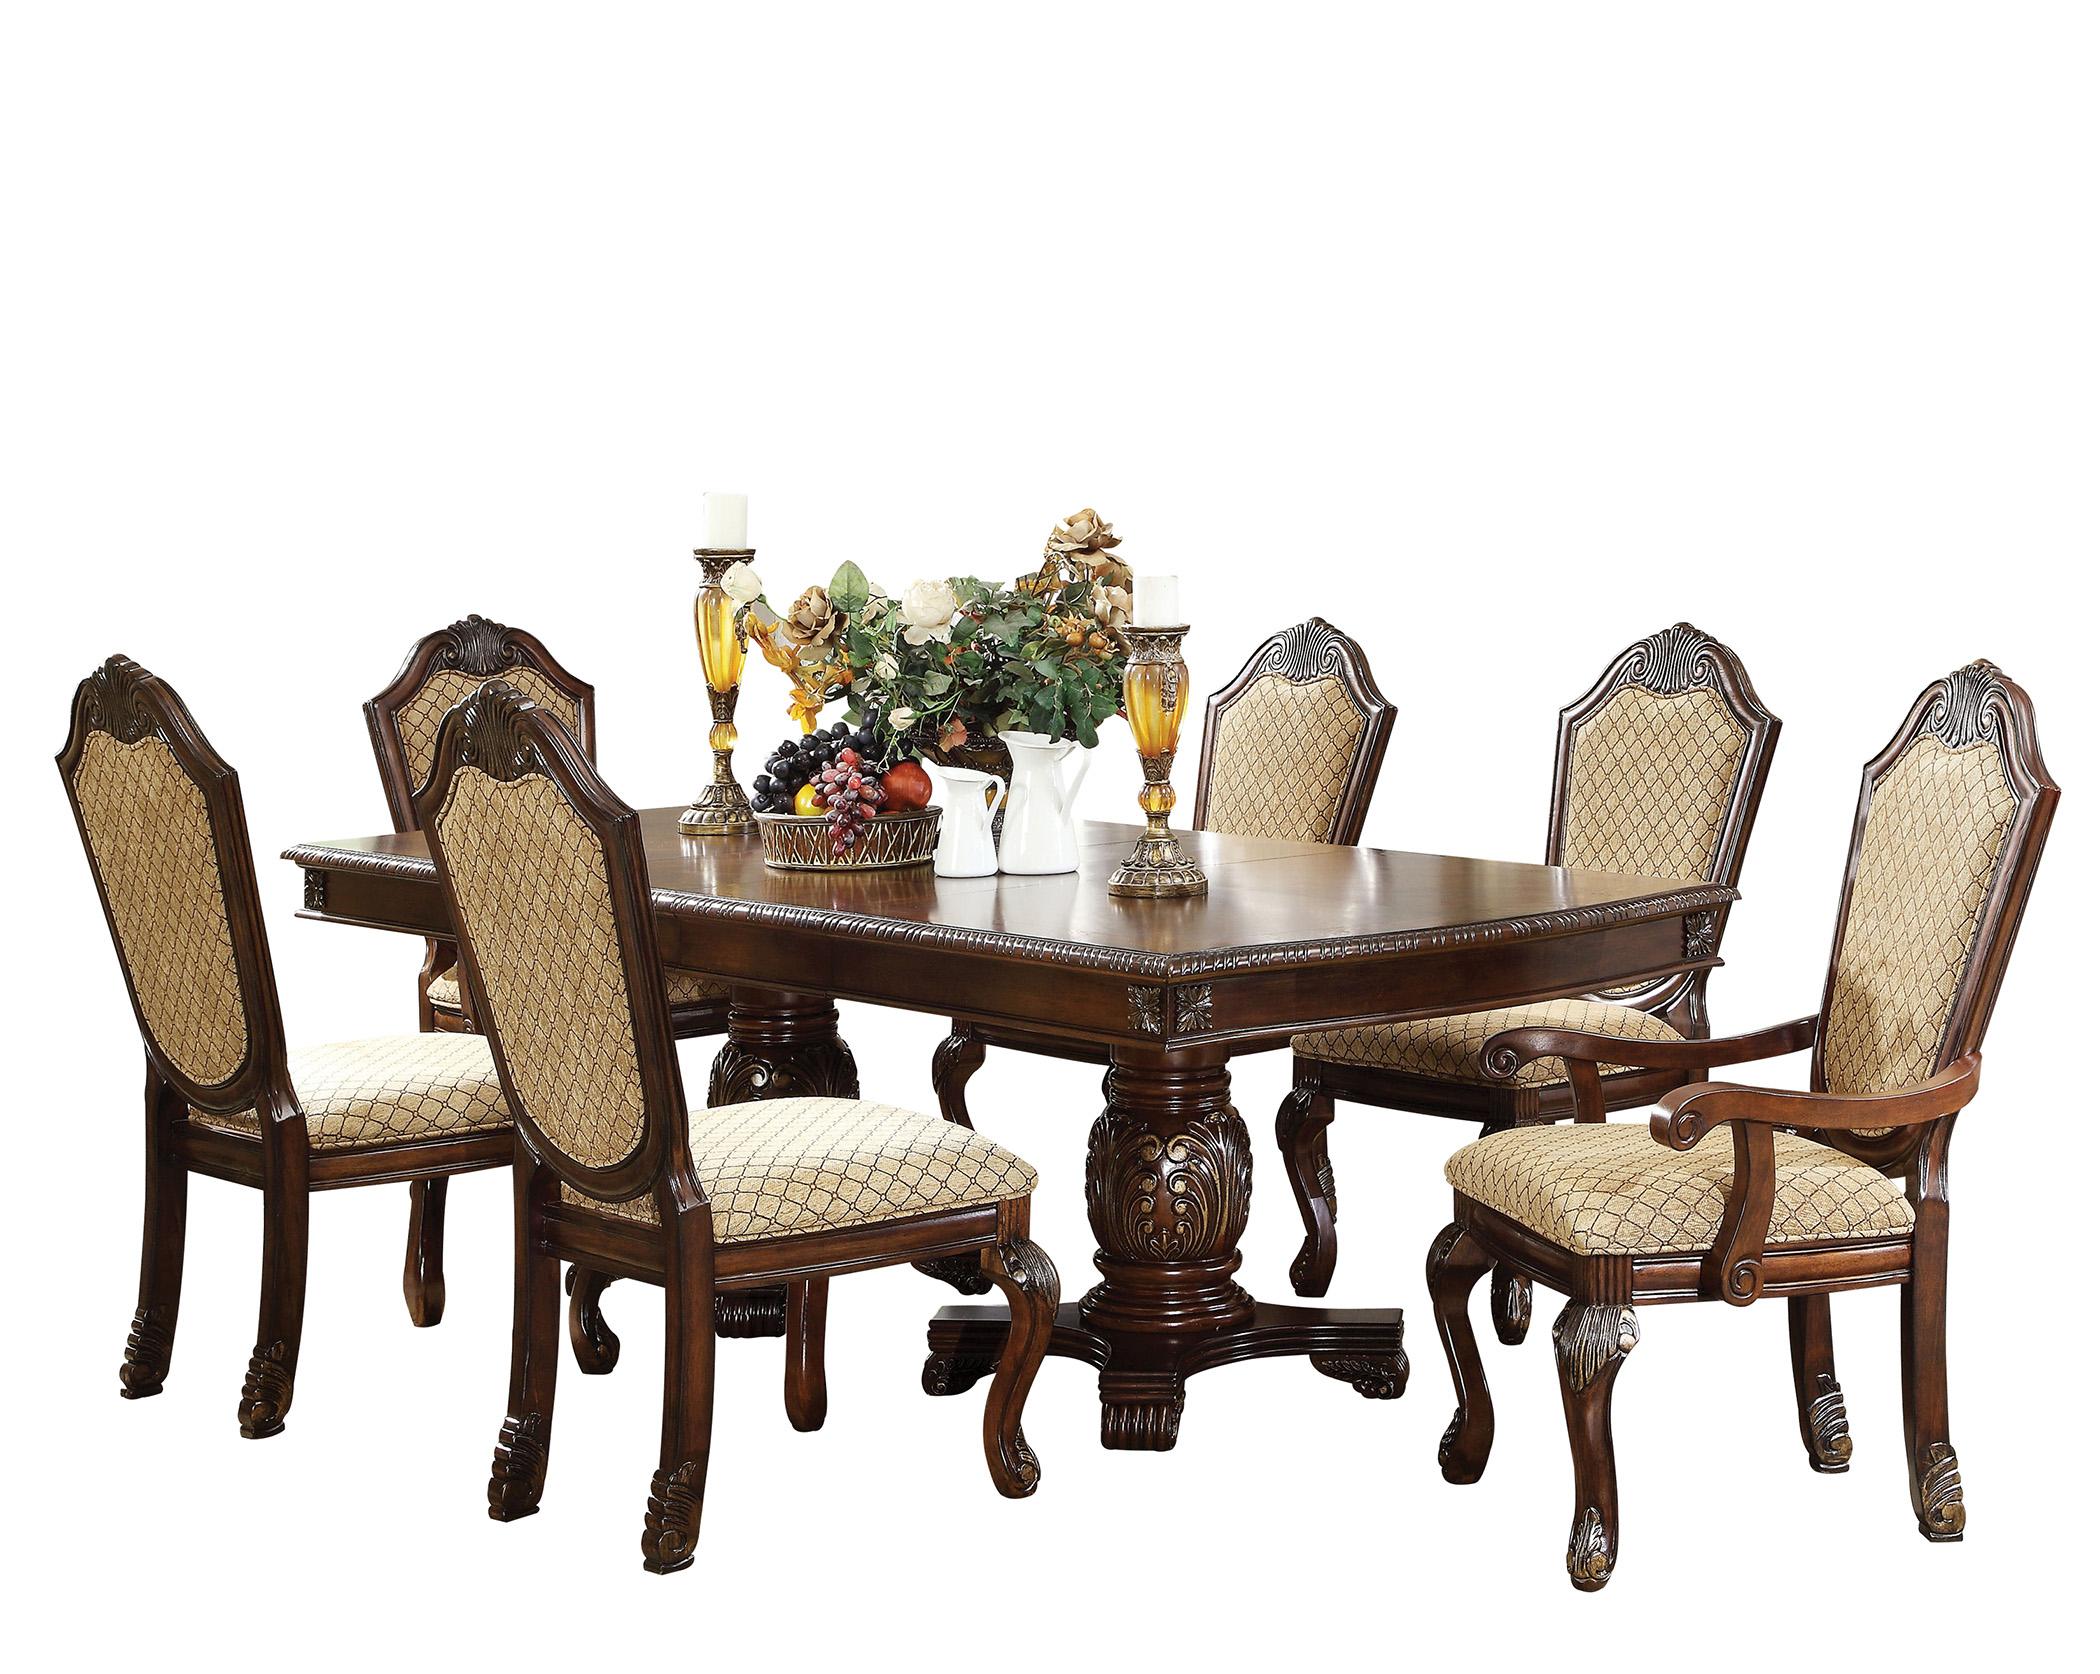 Classic, Traditional Dining Table Set Chateau De Ville 64075 Chateau-De-Ville-64075-Set-7 in Espresso Chenille